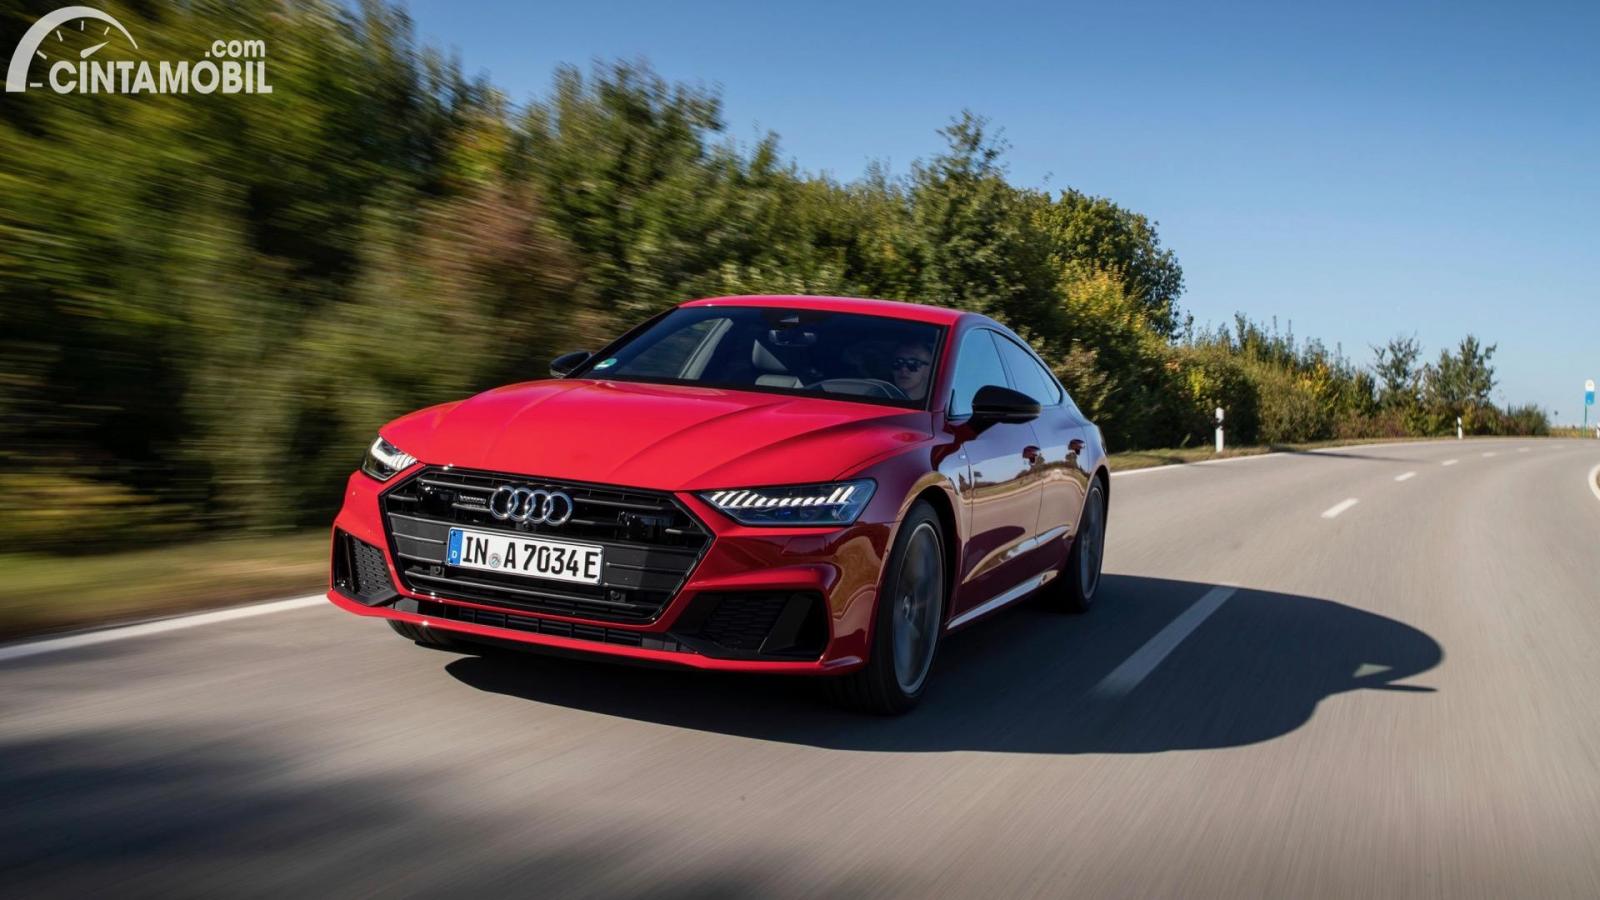 Gambar sebuah mobil Audi A7 berwarna merah dilihat dari sisi depan